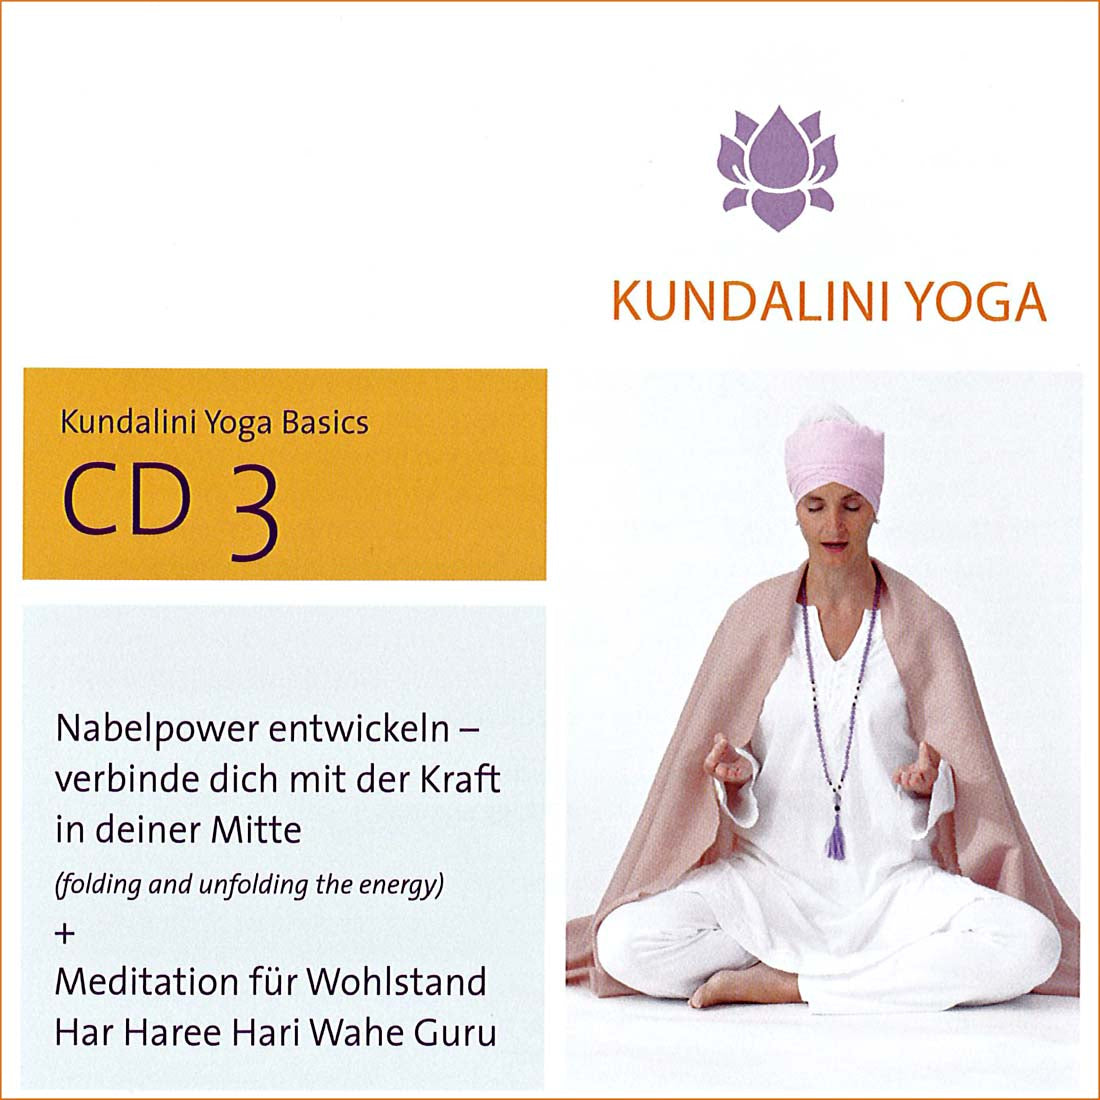 Kundalini Yoga Basics CD 3 - Gurmeet Kaur complete